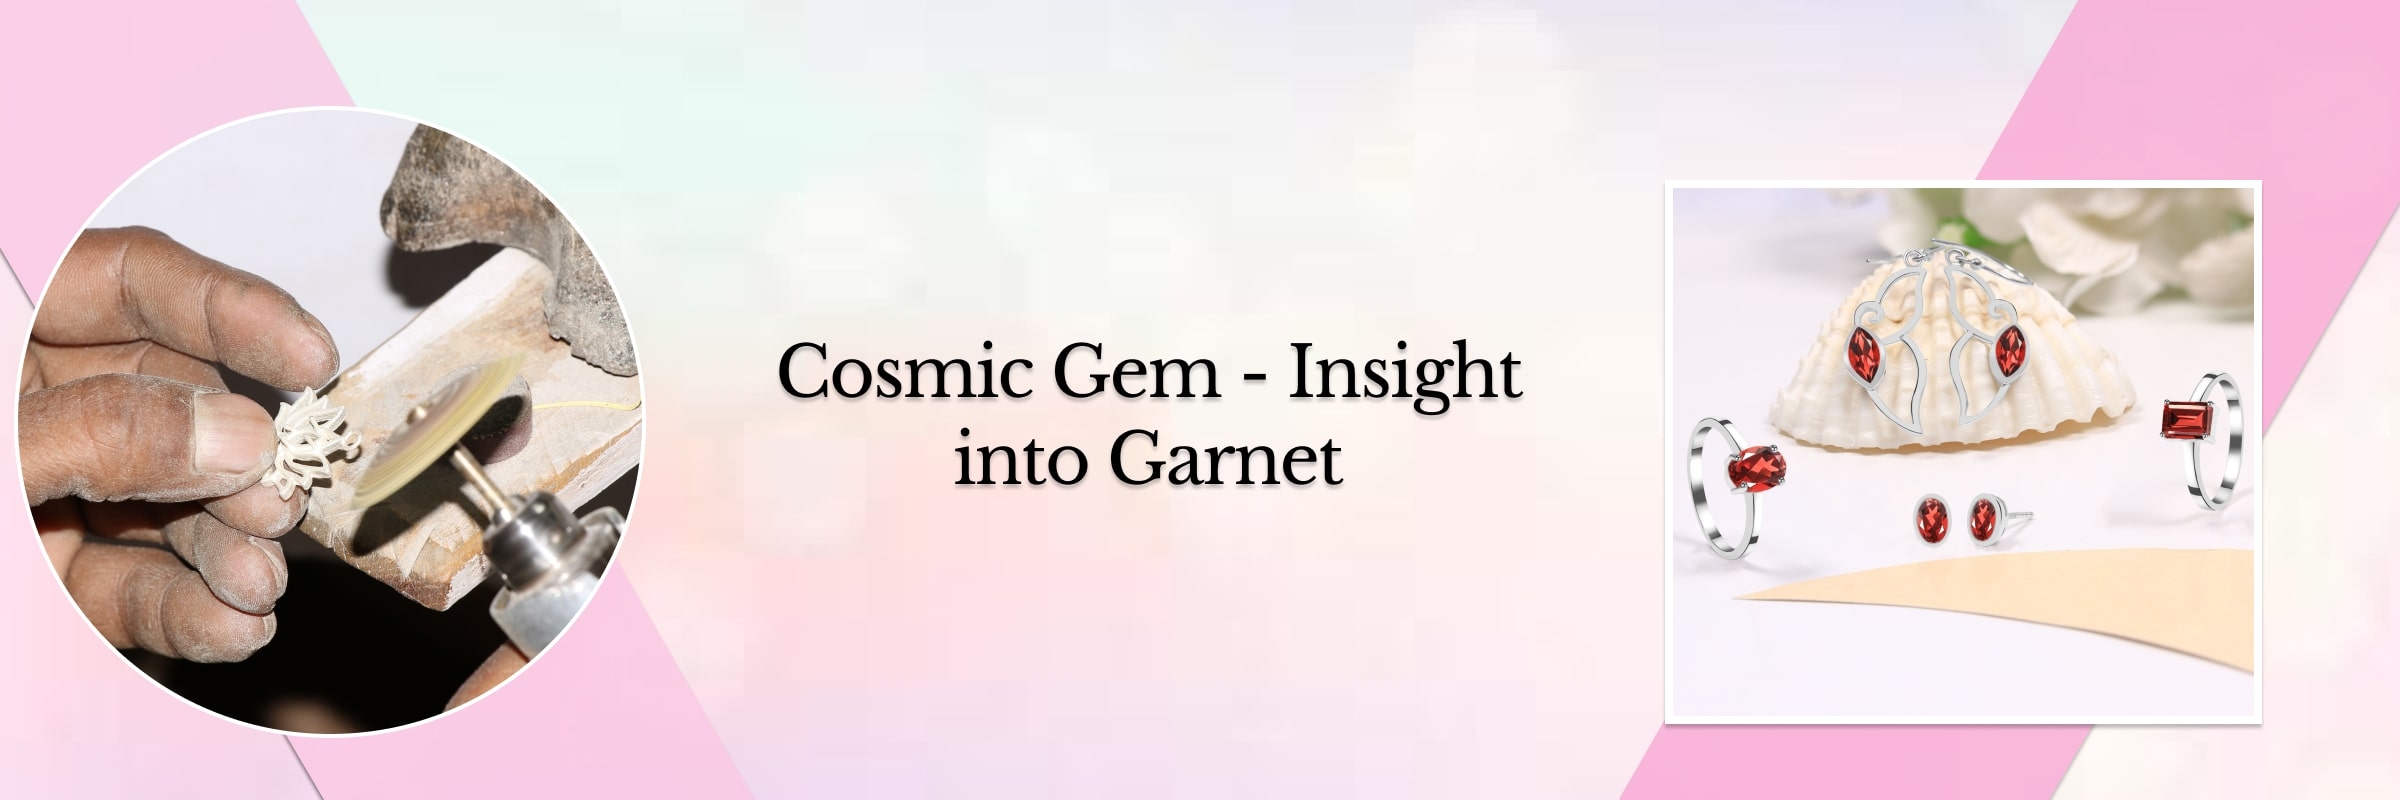 Understanding Garnet